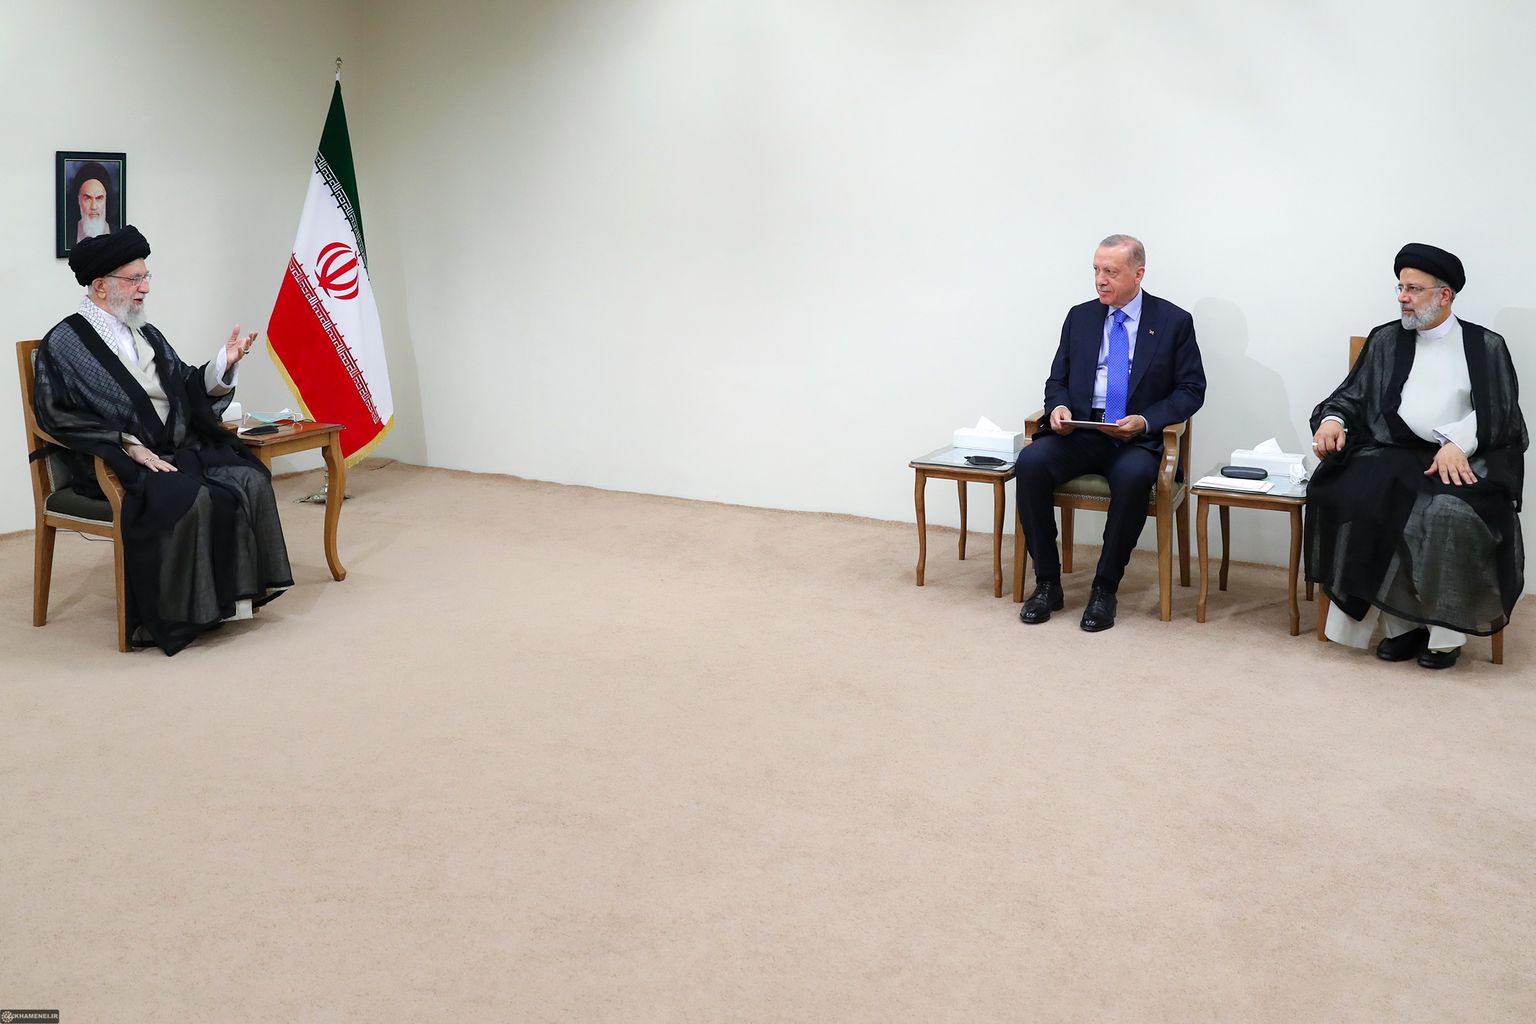 Iraani kõrgeim juht ajatolla Ali Khamenei kohtumisel Türgi presidendi Recep Tayyip Erdoğani ja Iraani riigipea Ebrahim Raisiga.